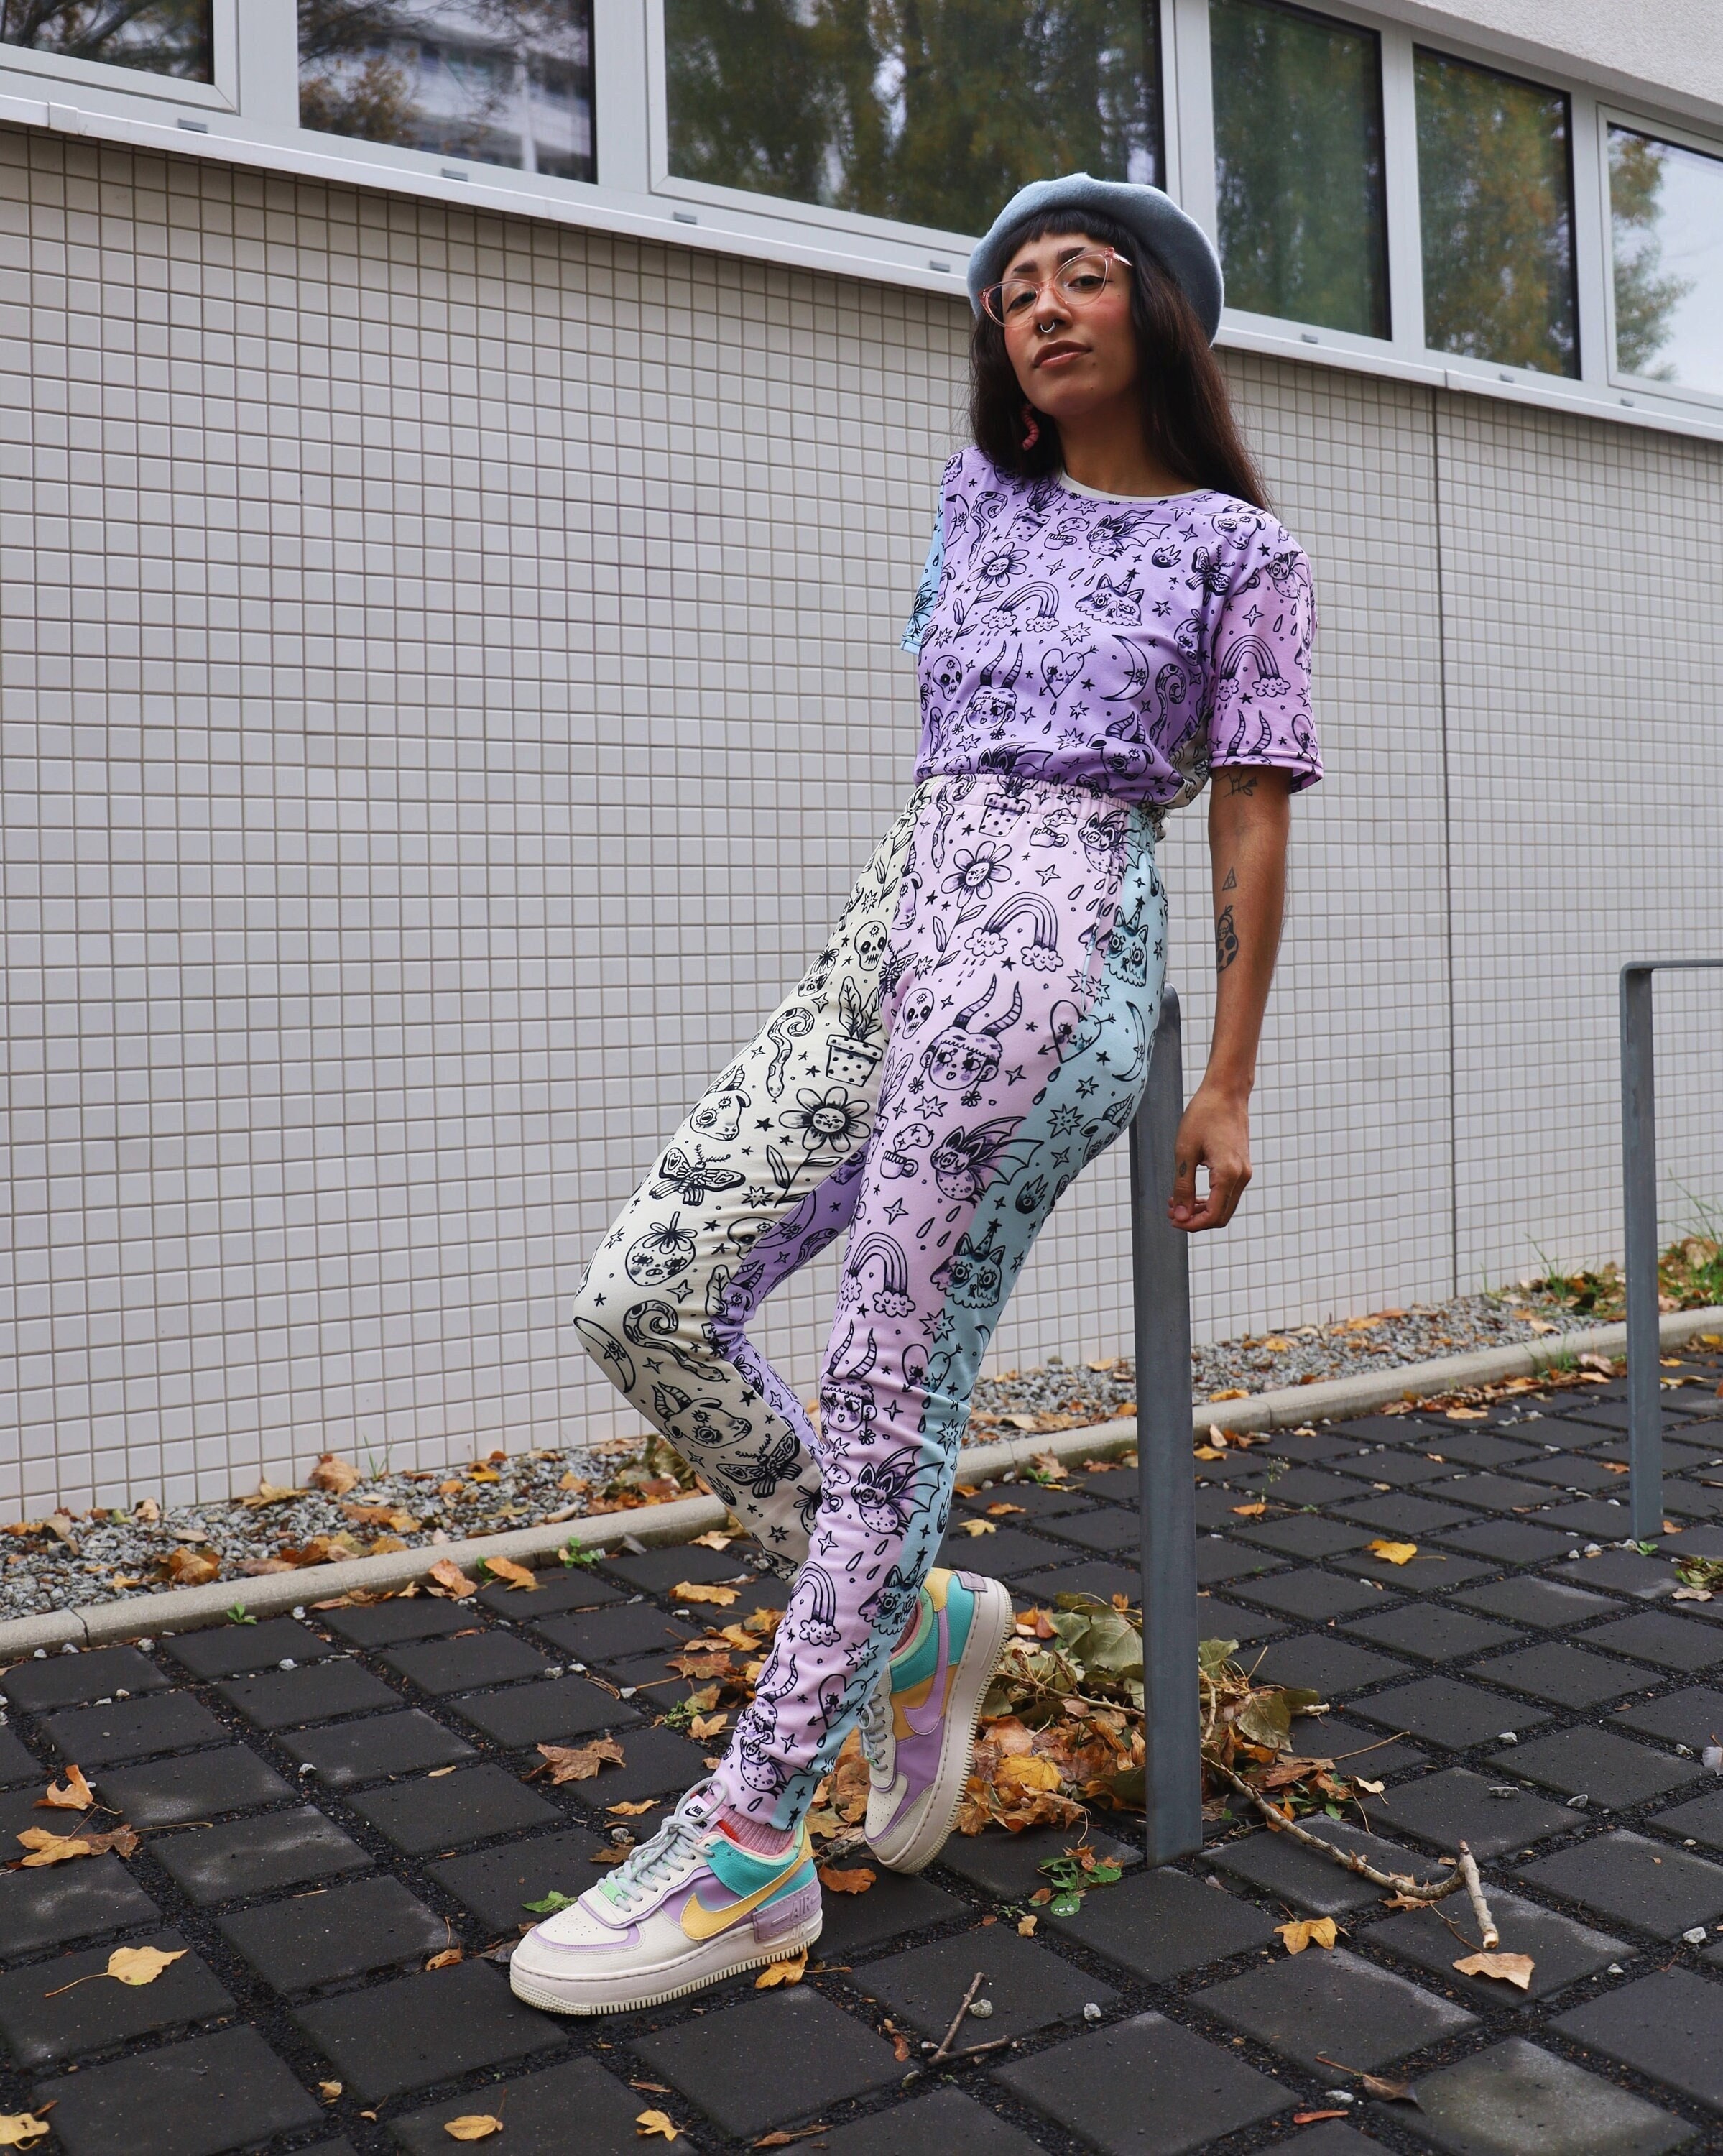 Purple Solid High Waist Straight Cargo Pants - Kawaii Fashion Shop | Cute  Asian Japanese Harajuku Cute Kawaii Fashion Clothing